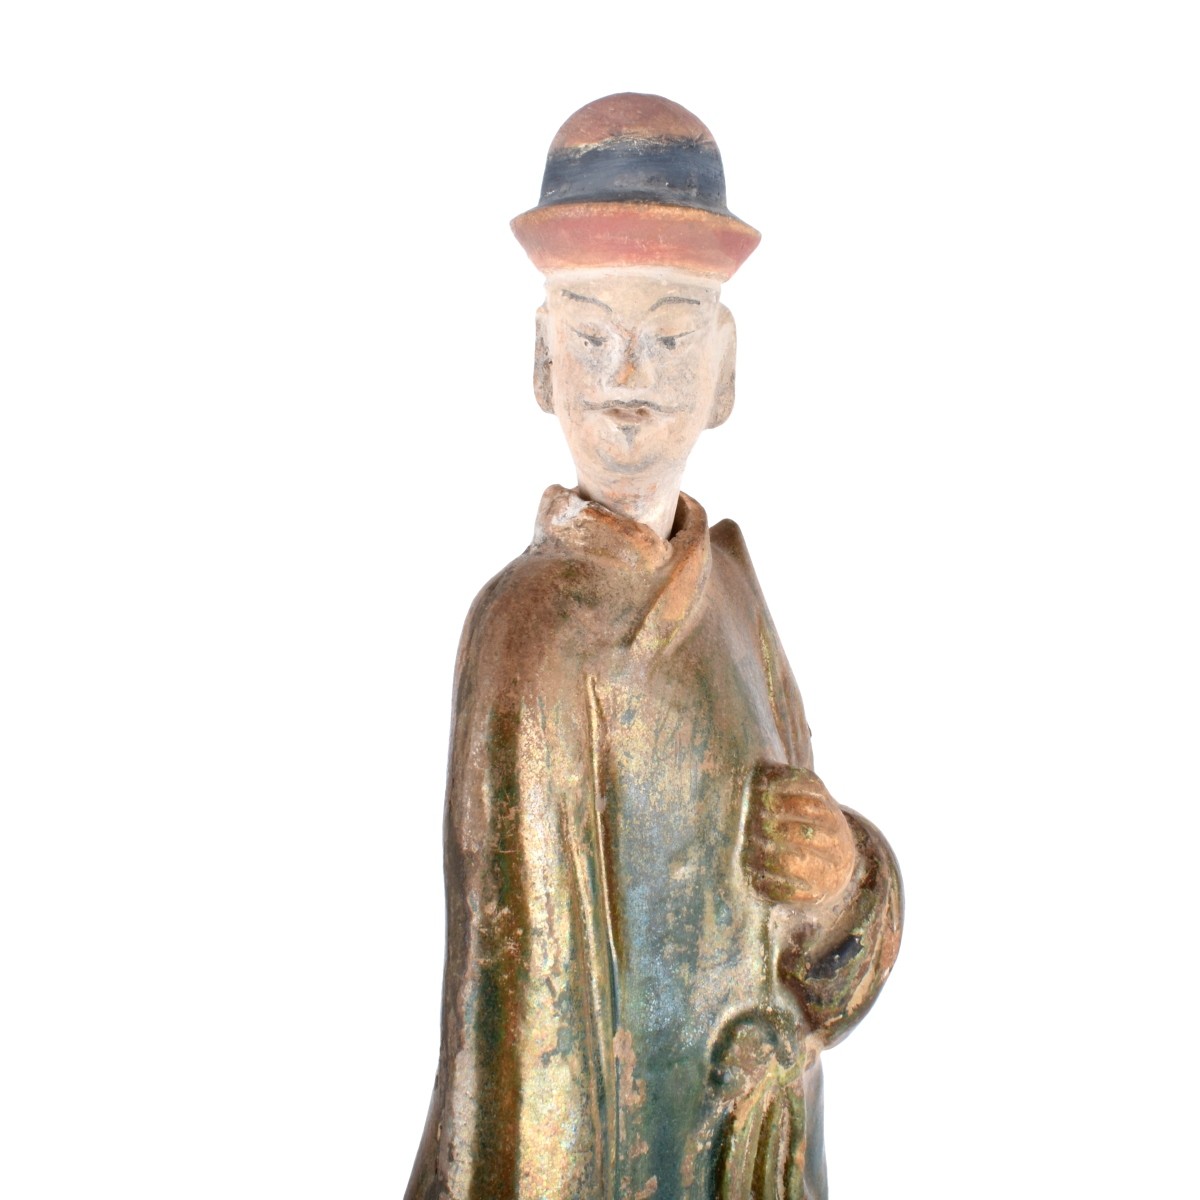 Chinese Tomb Figurine